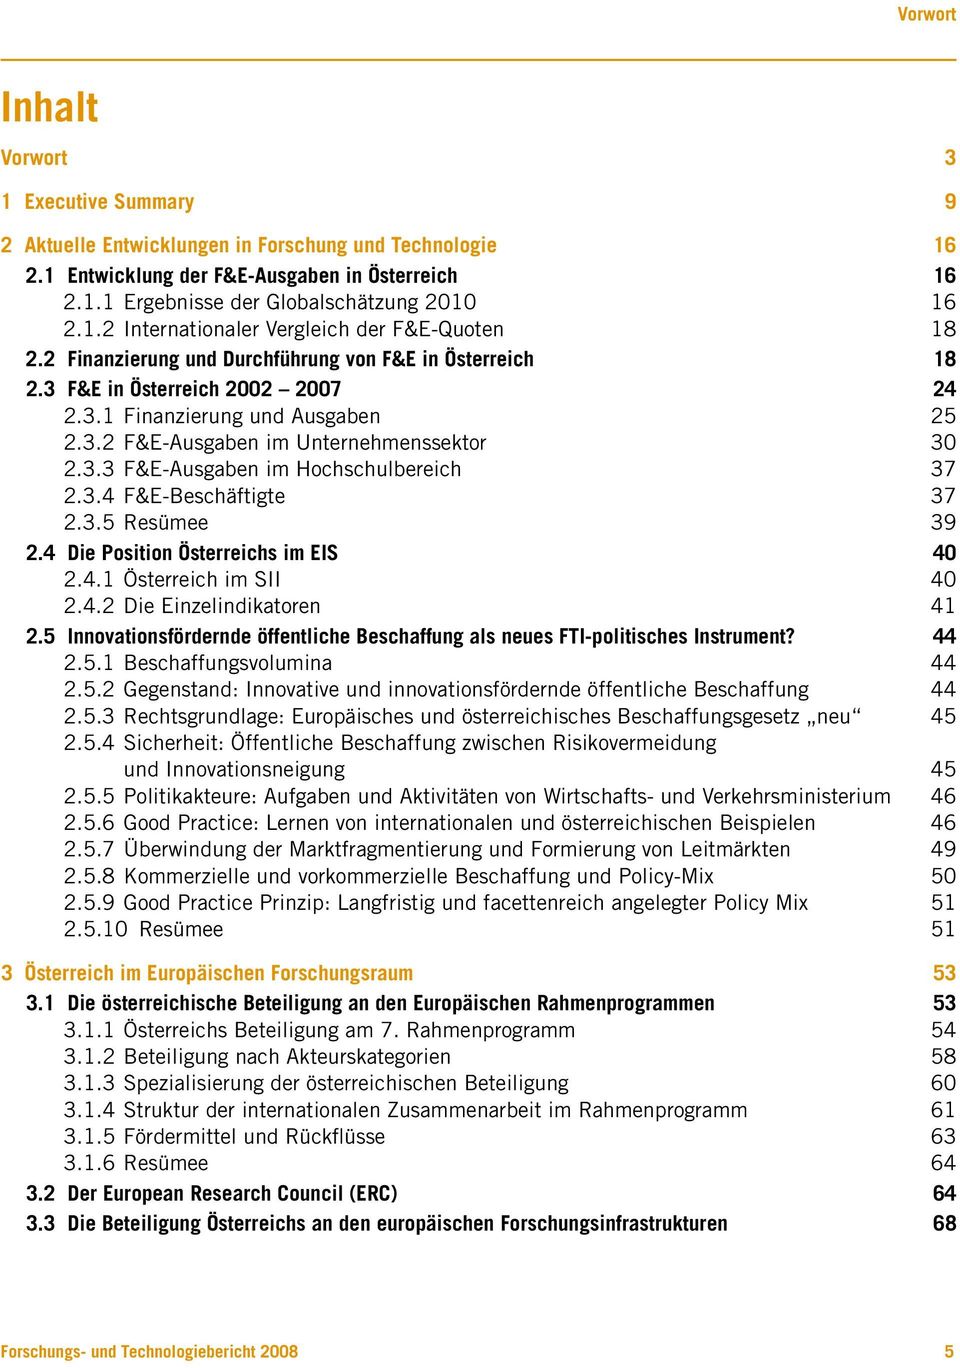 3.3 F&E-Ausgaben im Hochschulbereich 37 2.3.4 F&E-Beschäftigte 37 2.3.5 Resümee 39 2.4 Die Position Österreichs im EIS 40 2.4.1 Österreich im SII 40 2.4.2 Die Einzelindikatoren 41 2.